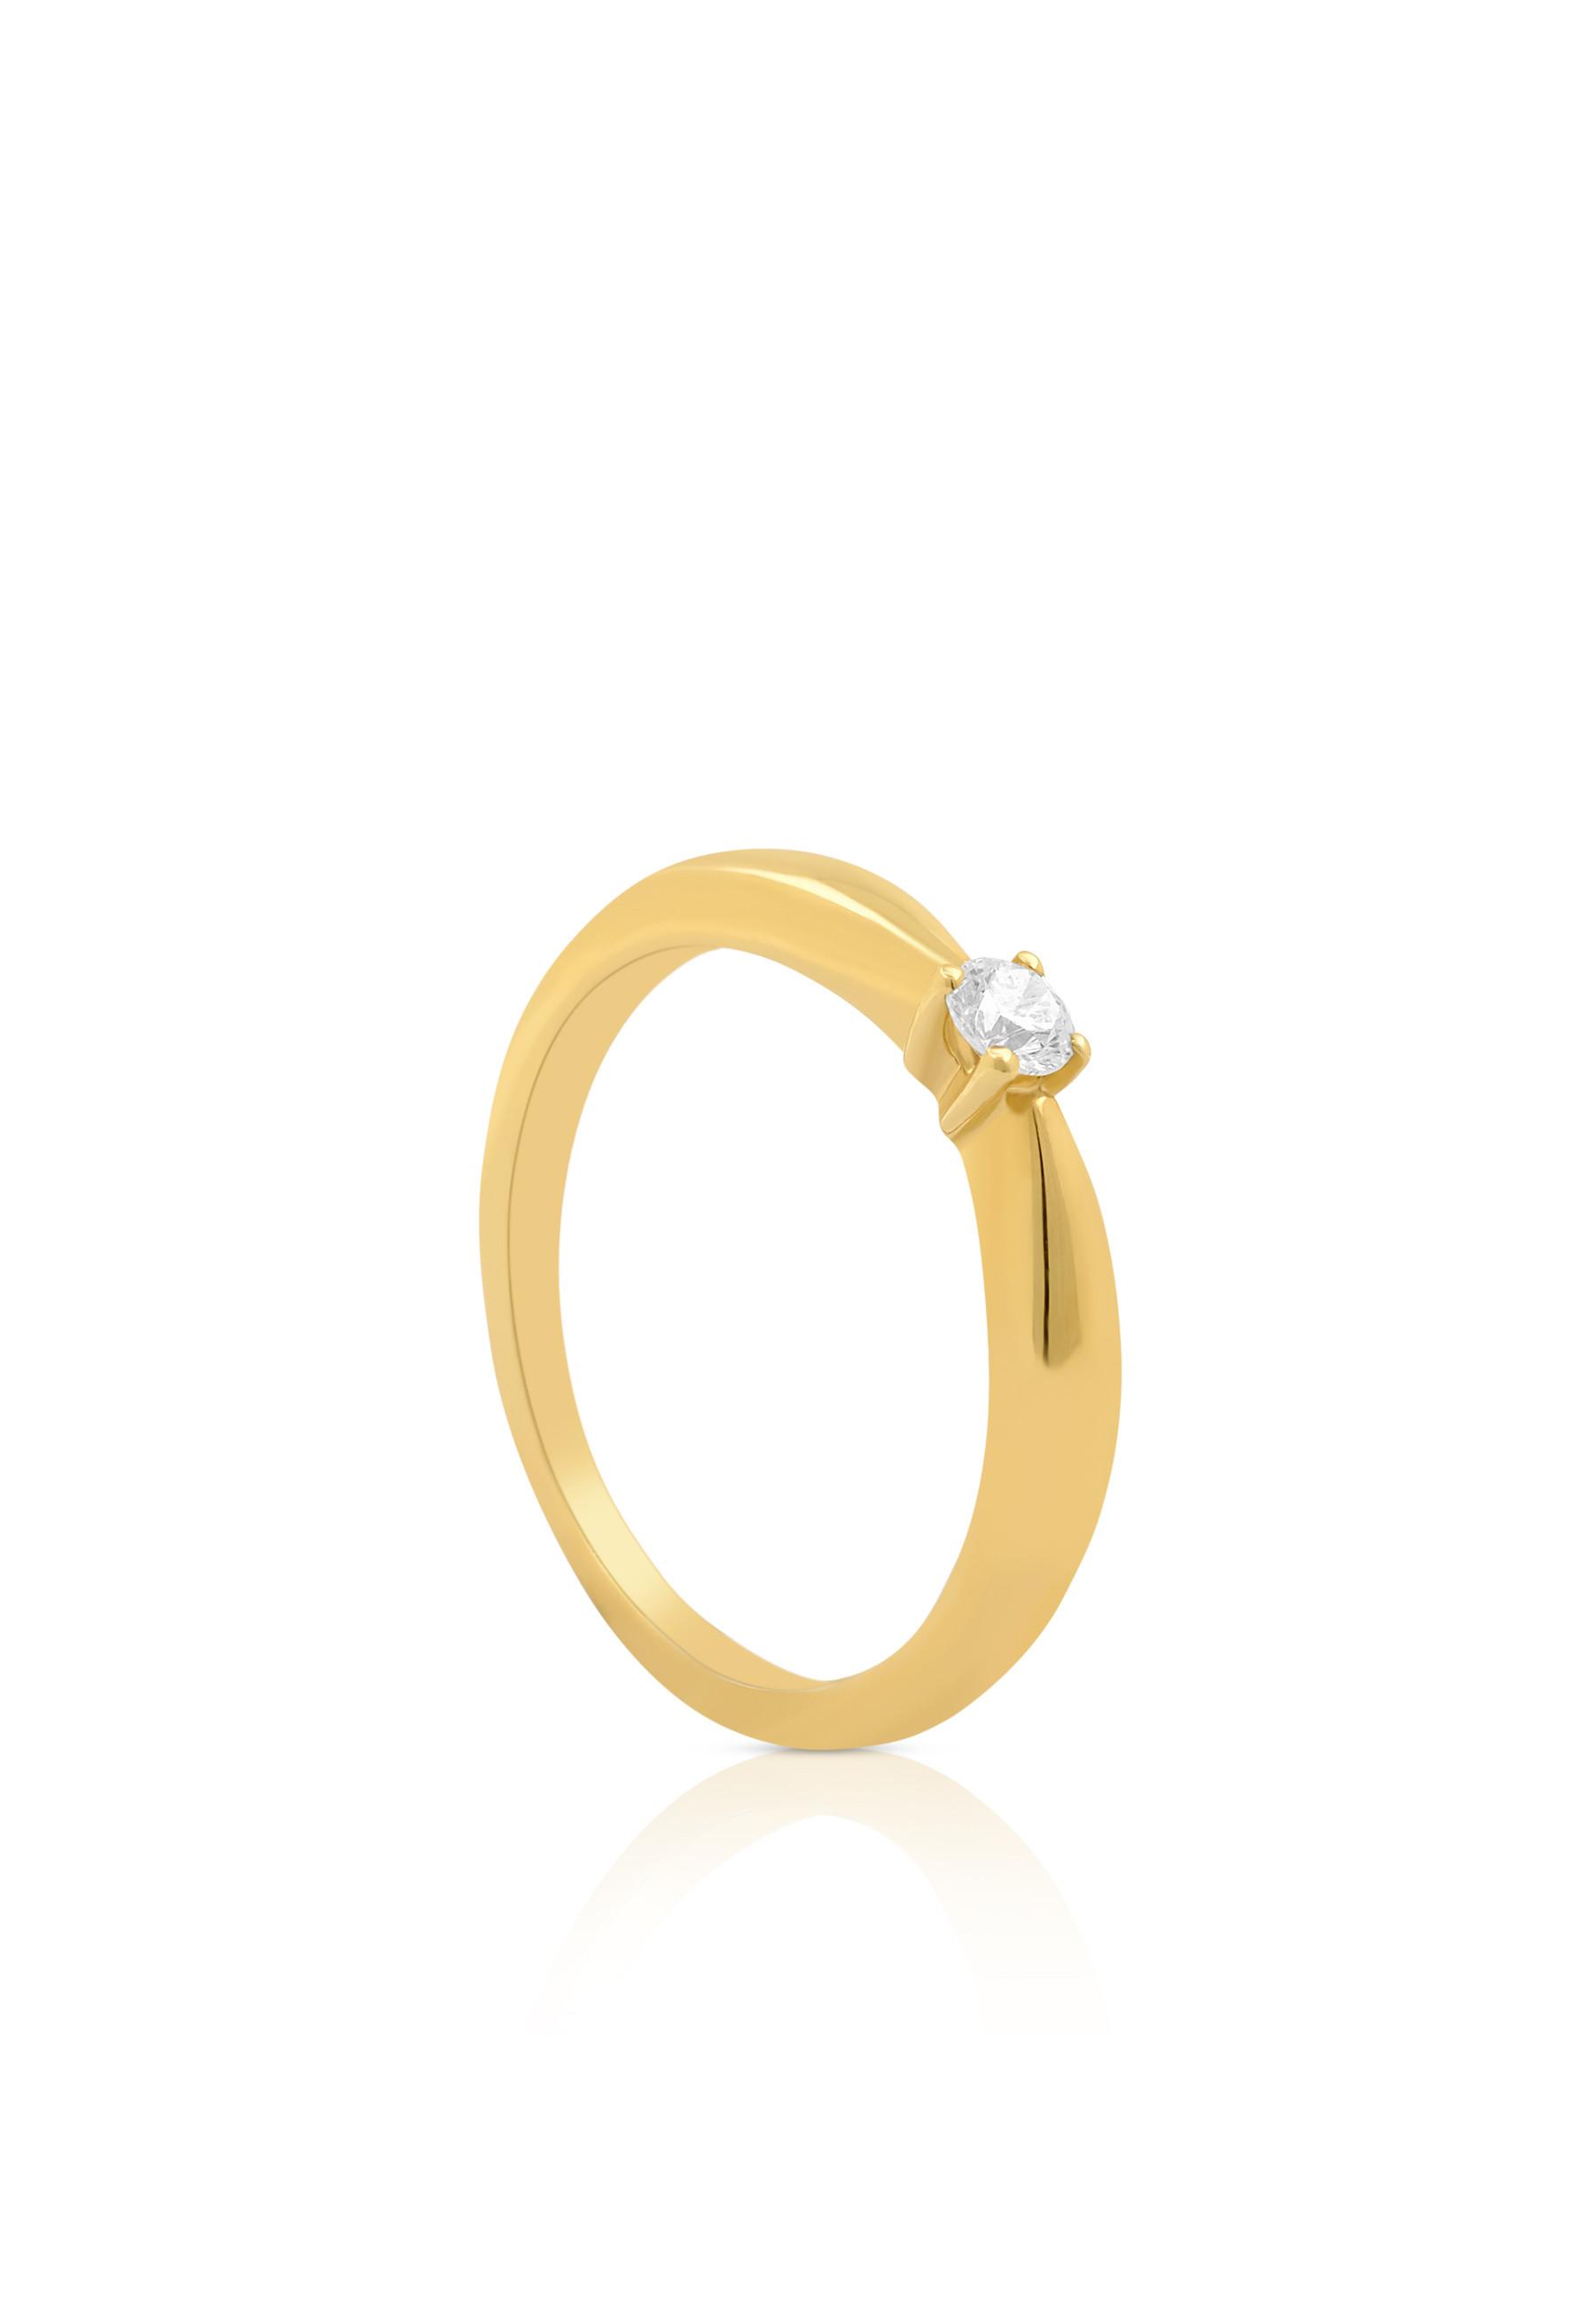 MUAU Schmuck  Solitaire Ring Diamant 0.10ct. Gelbgold 750 